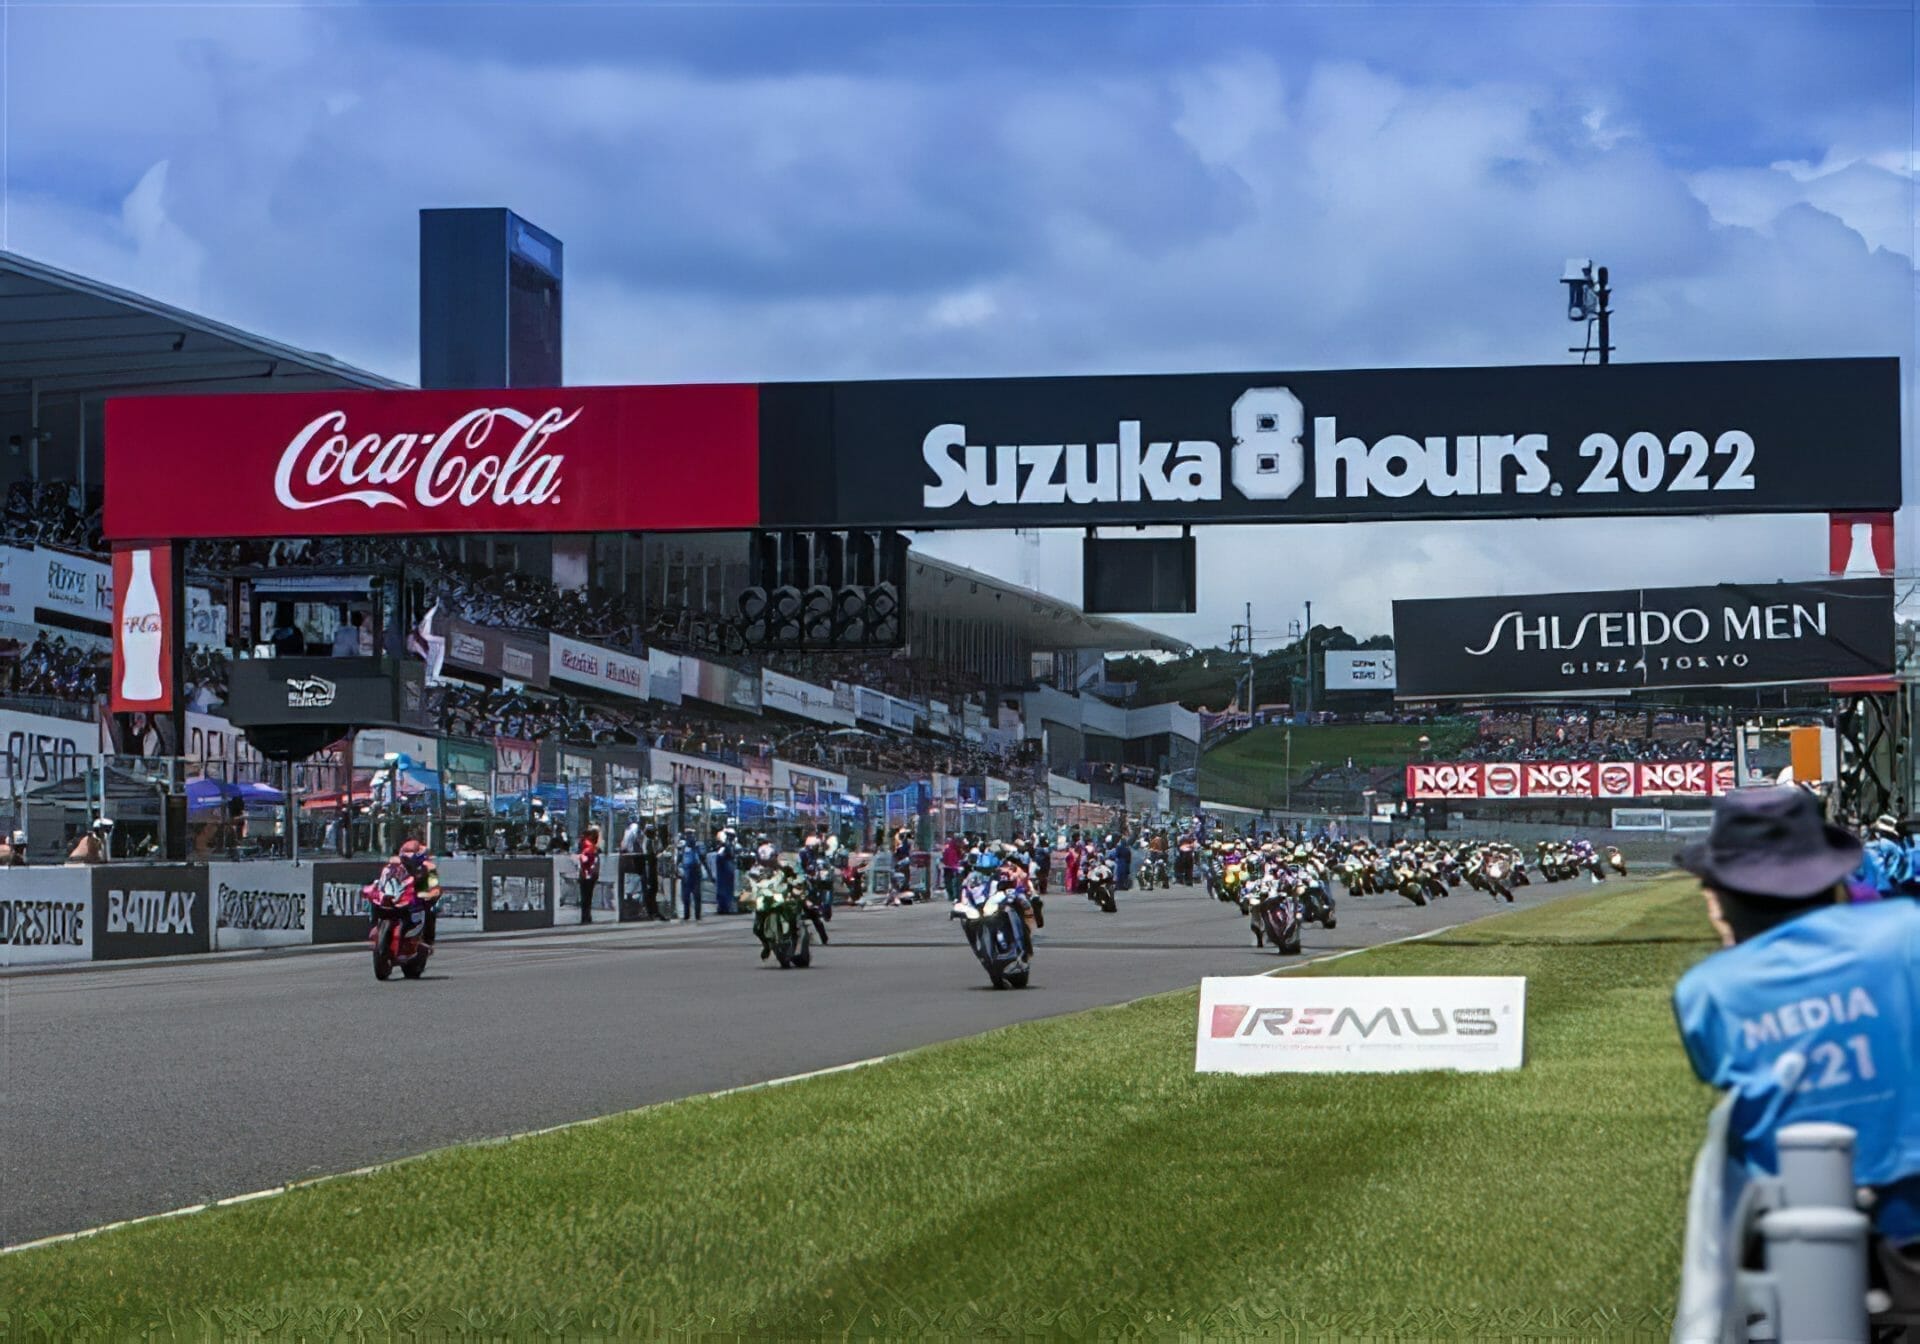 Suzuki puts a sustainable spin on the Suzuka 8-hour race